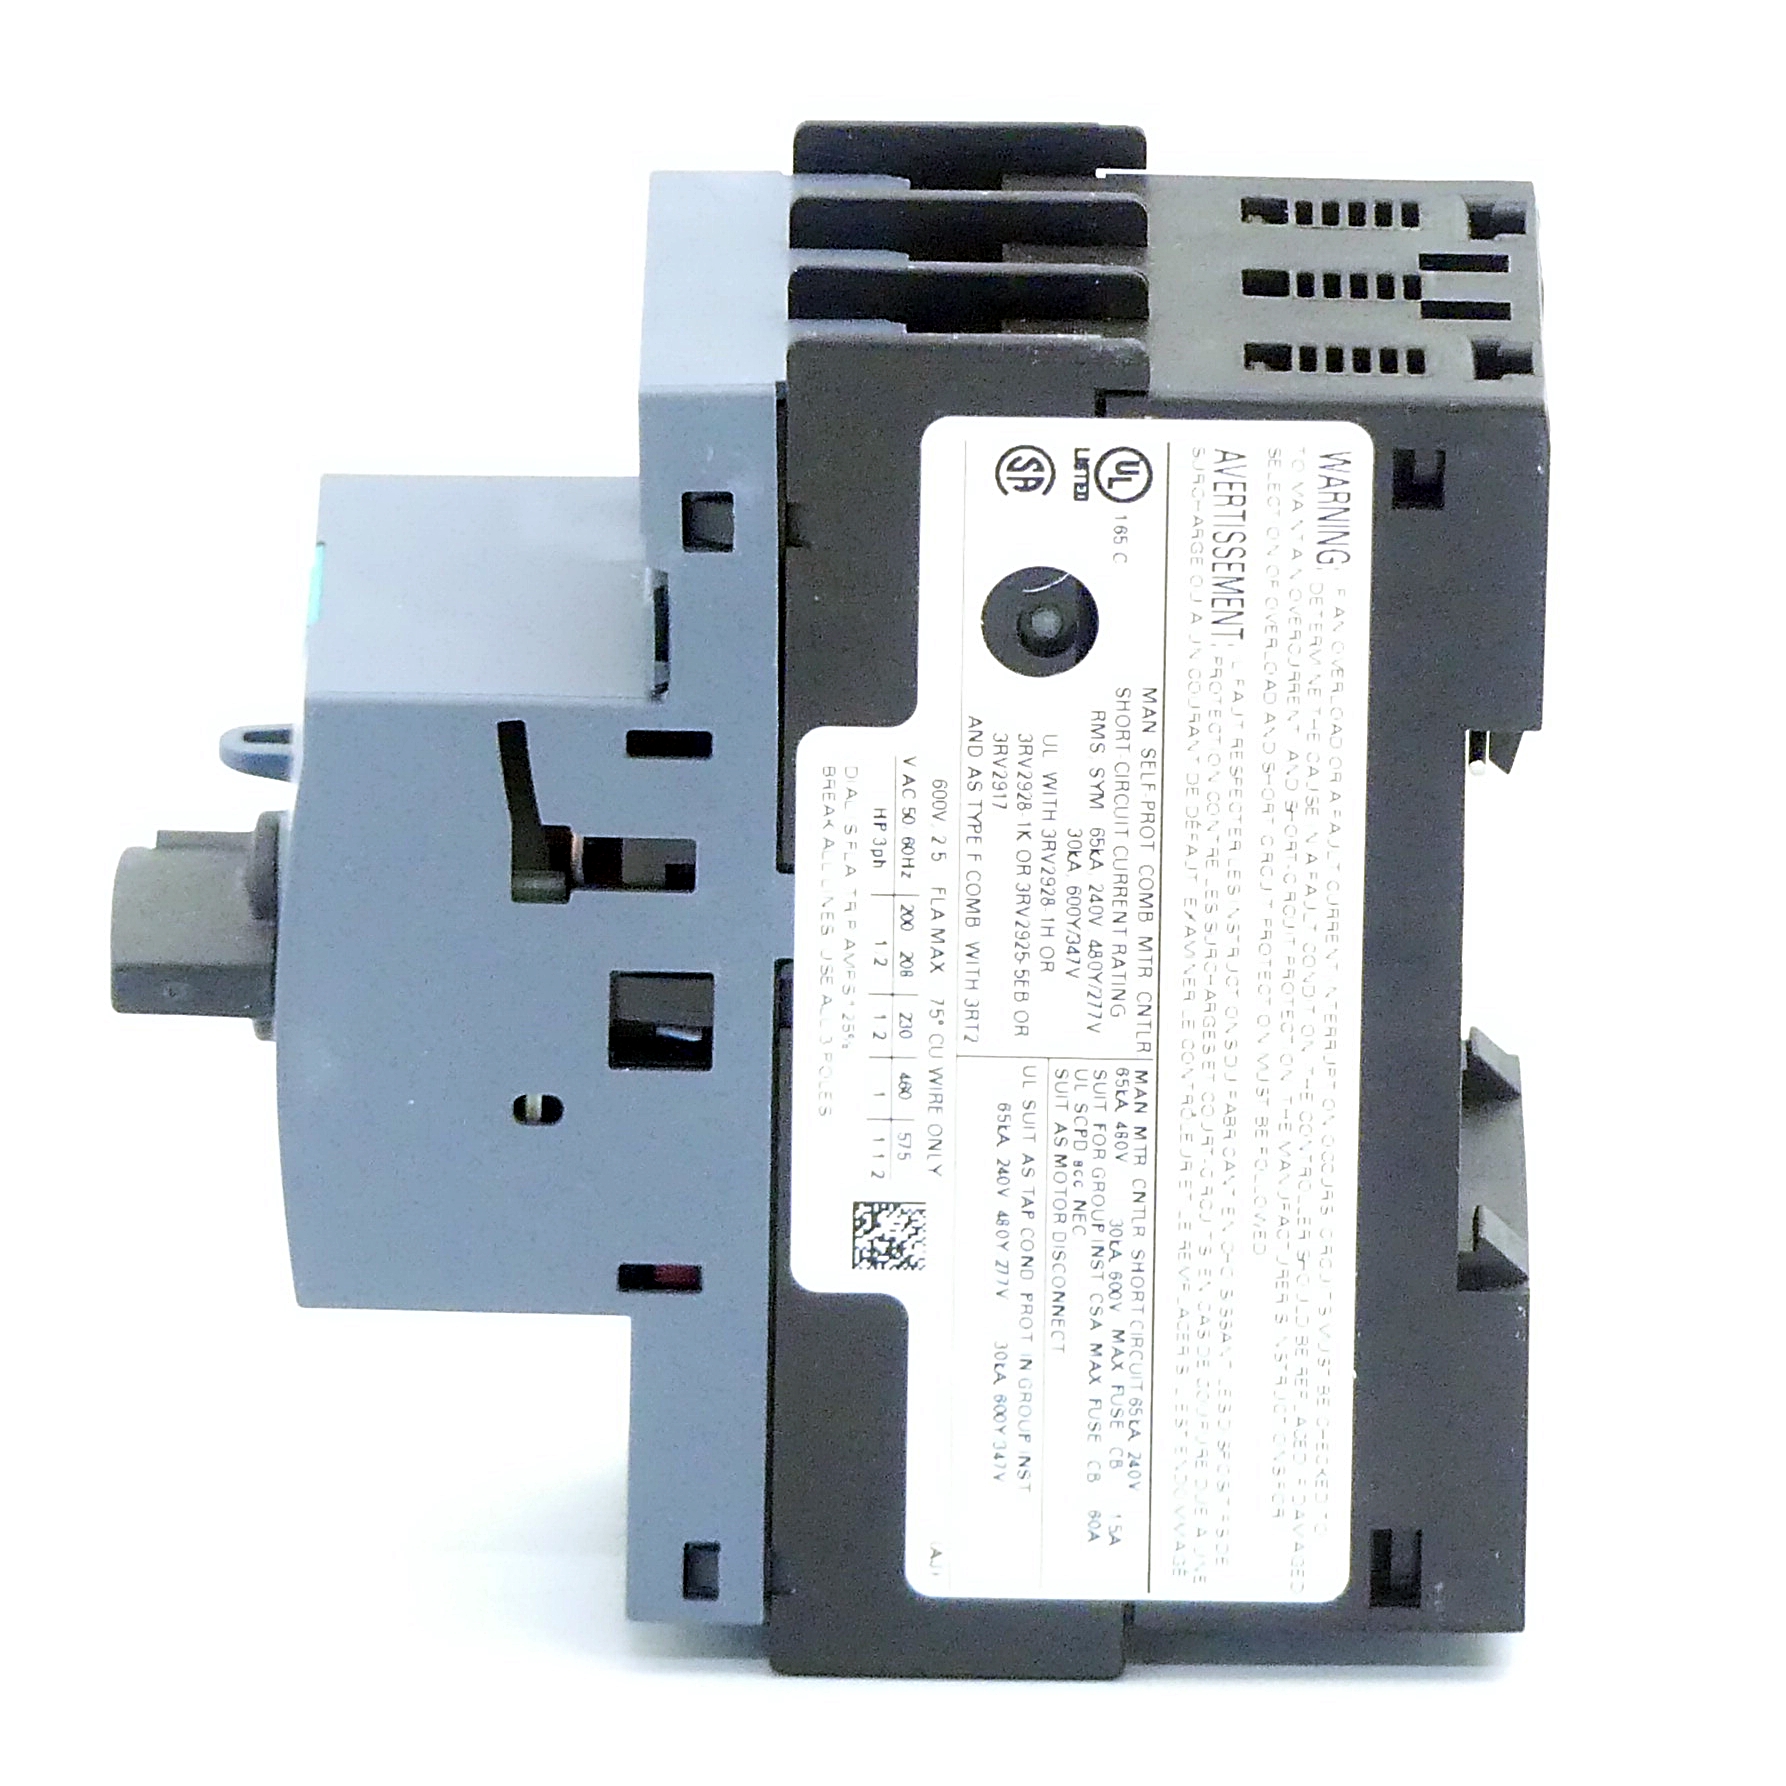 Leistungsschalter 3RV2021-1CA10 